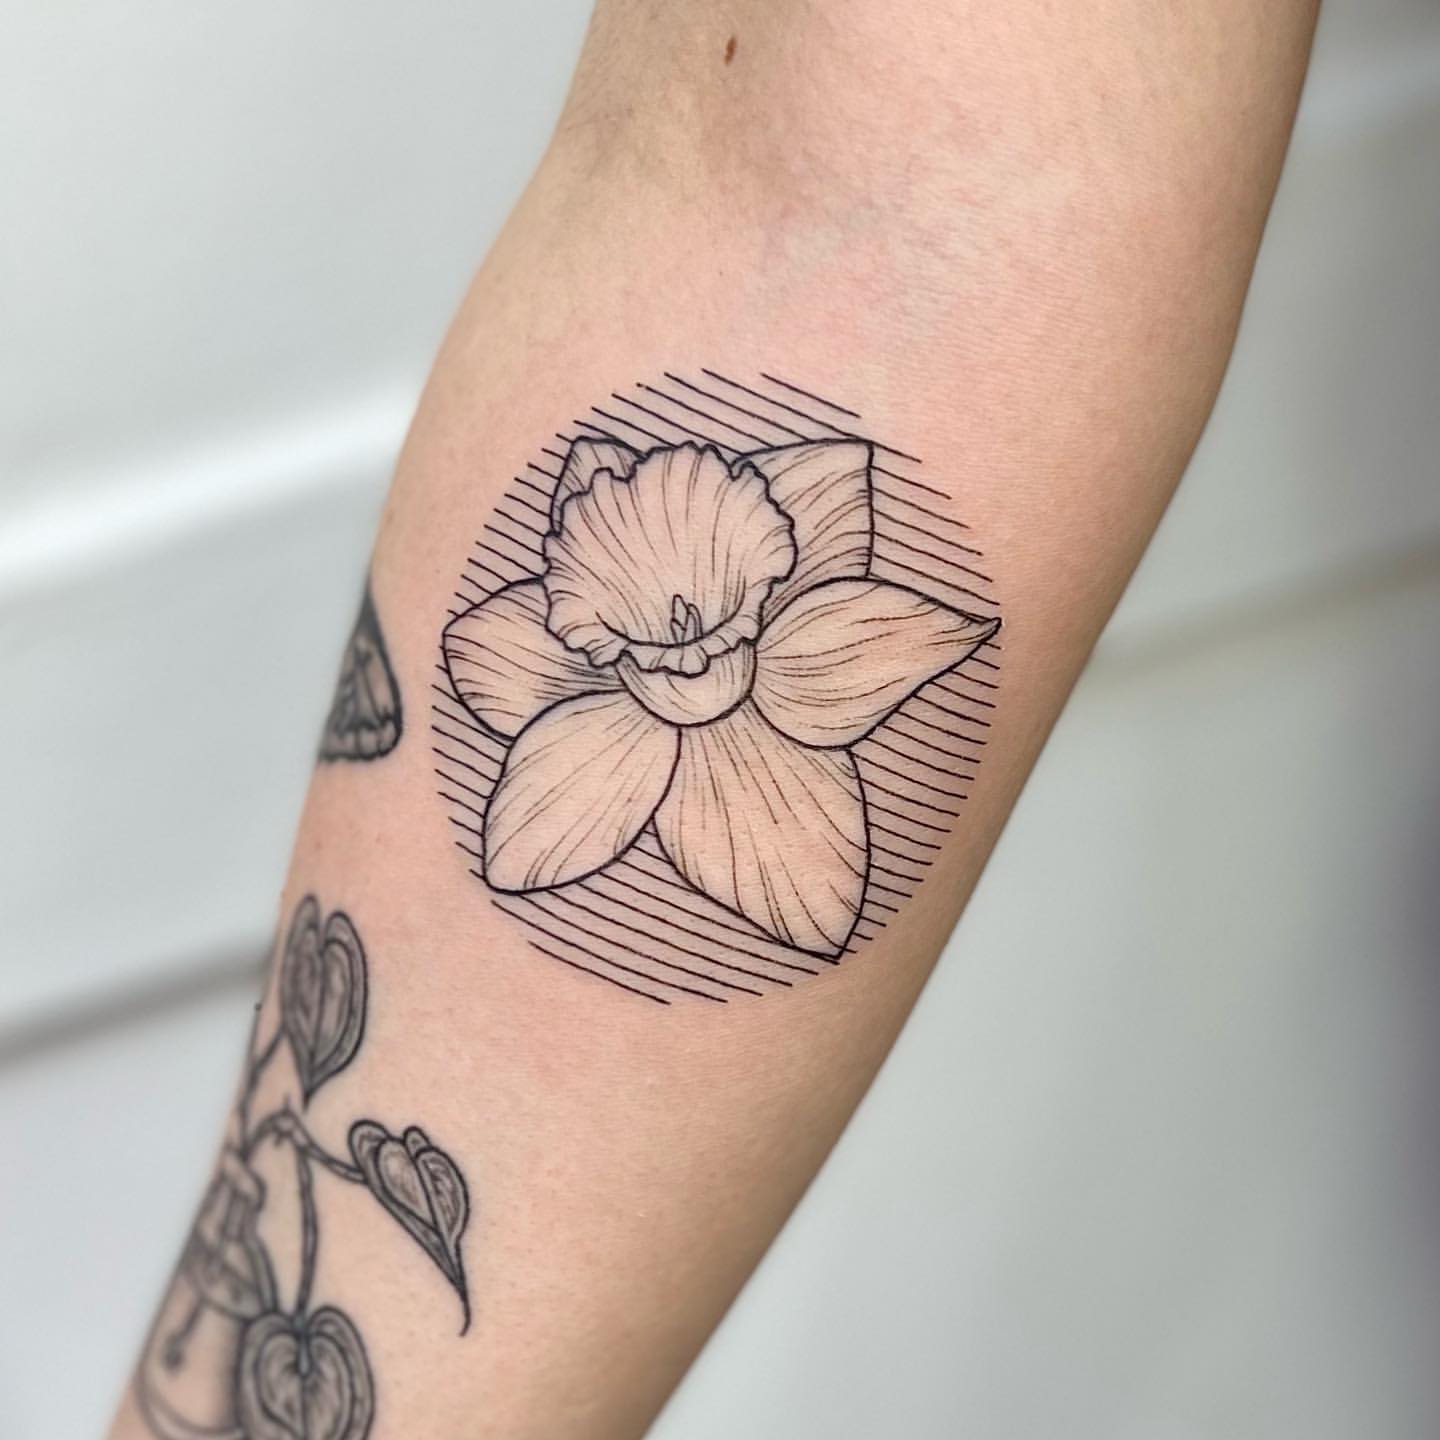 Daffodil Tattoo Ideas 30